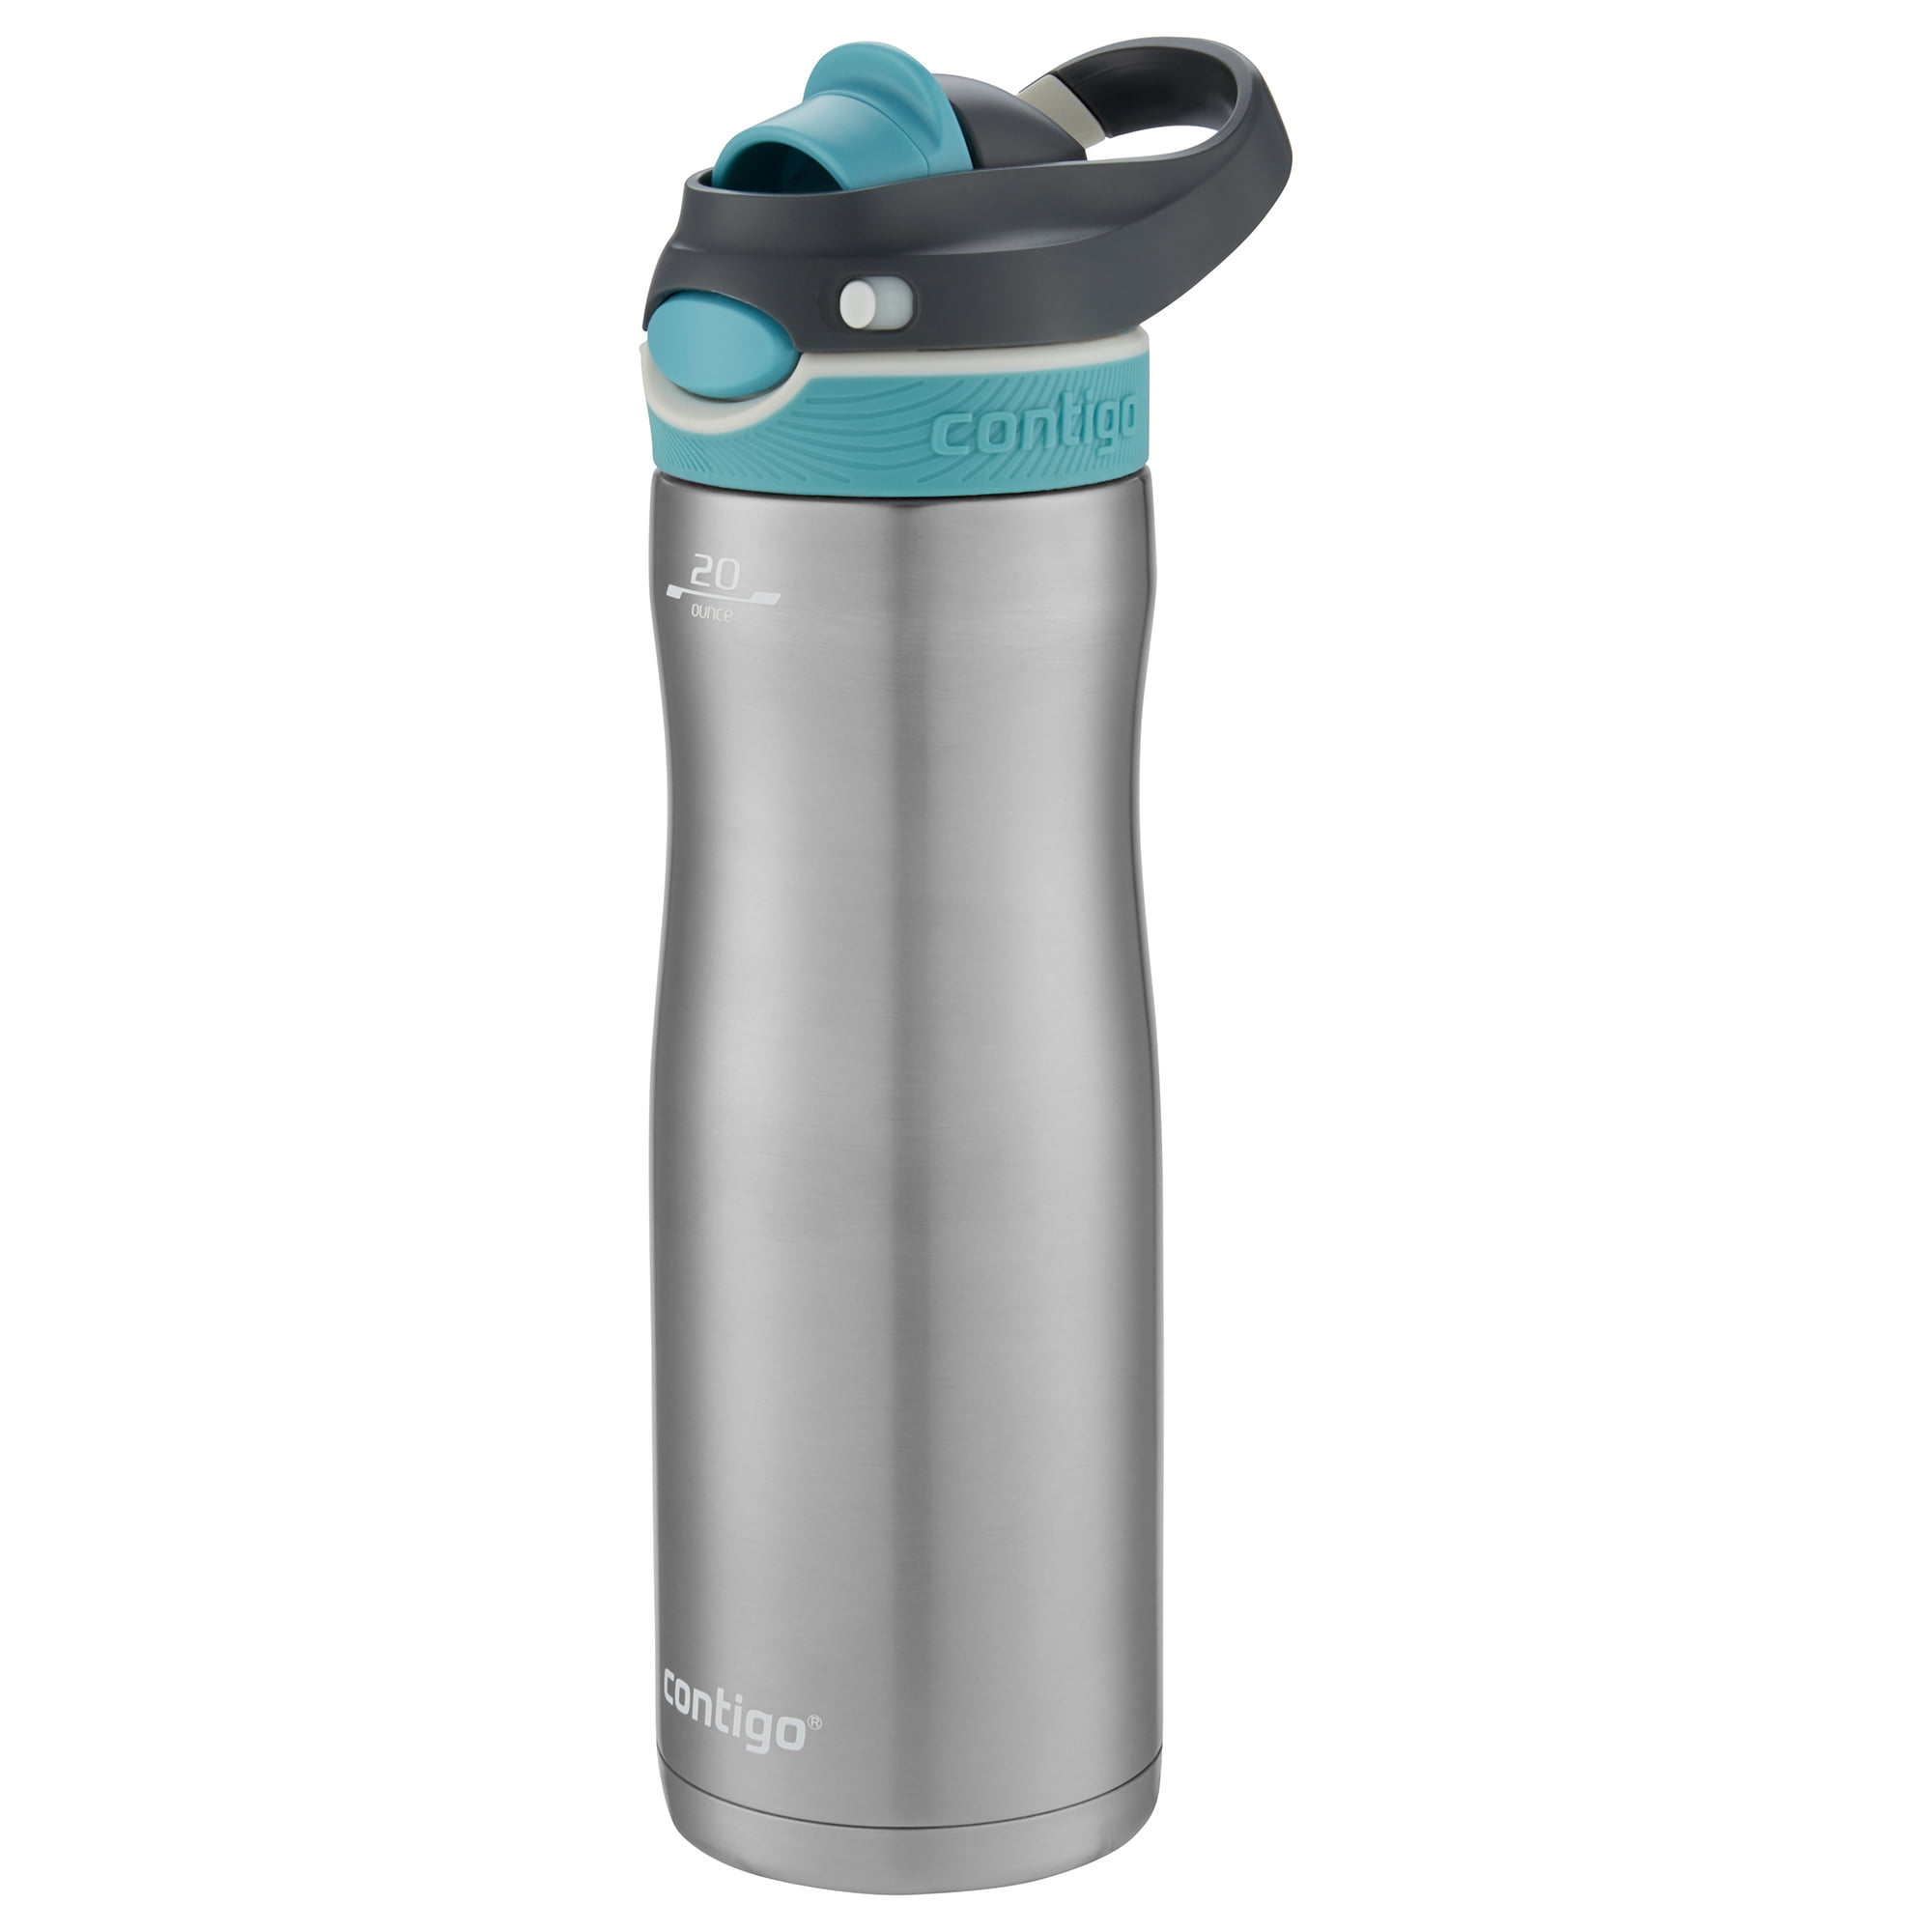 Contigo Stainless Steel Water Bottle with AUTOSPOUT Chug Lid Monaco, 20 fl  oz. 